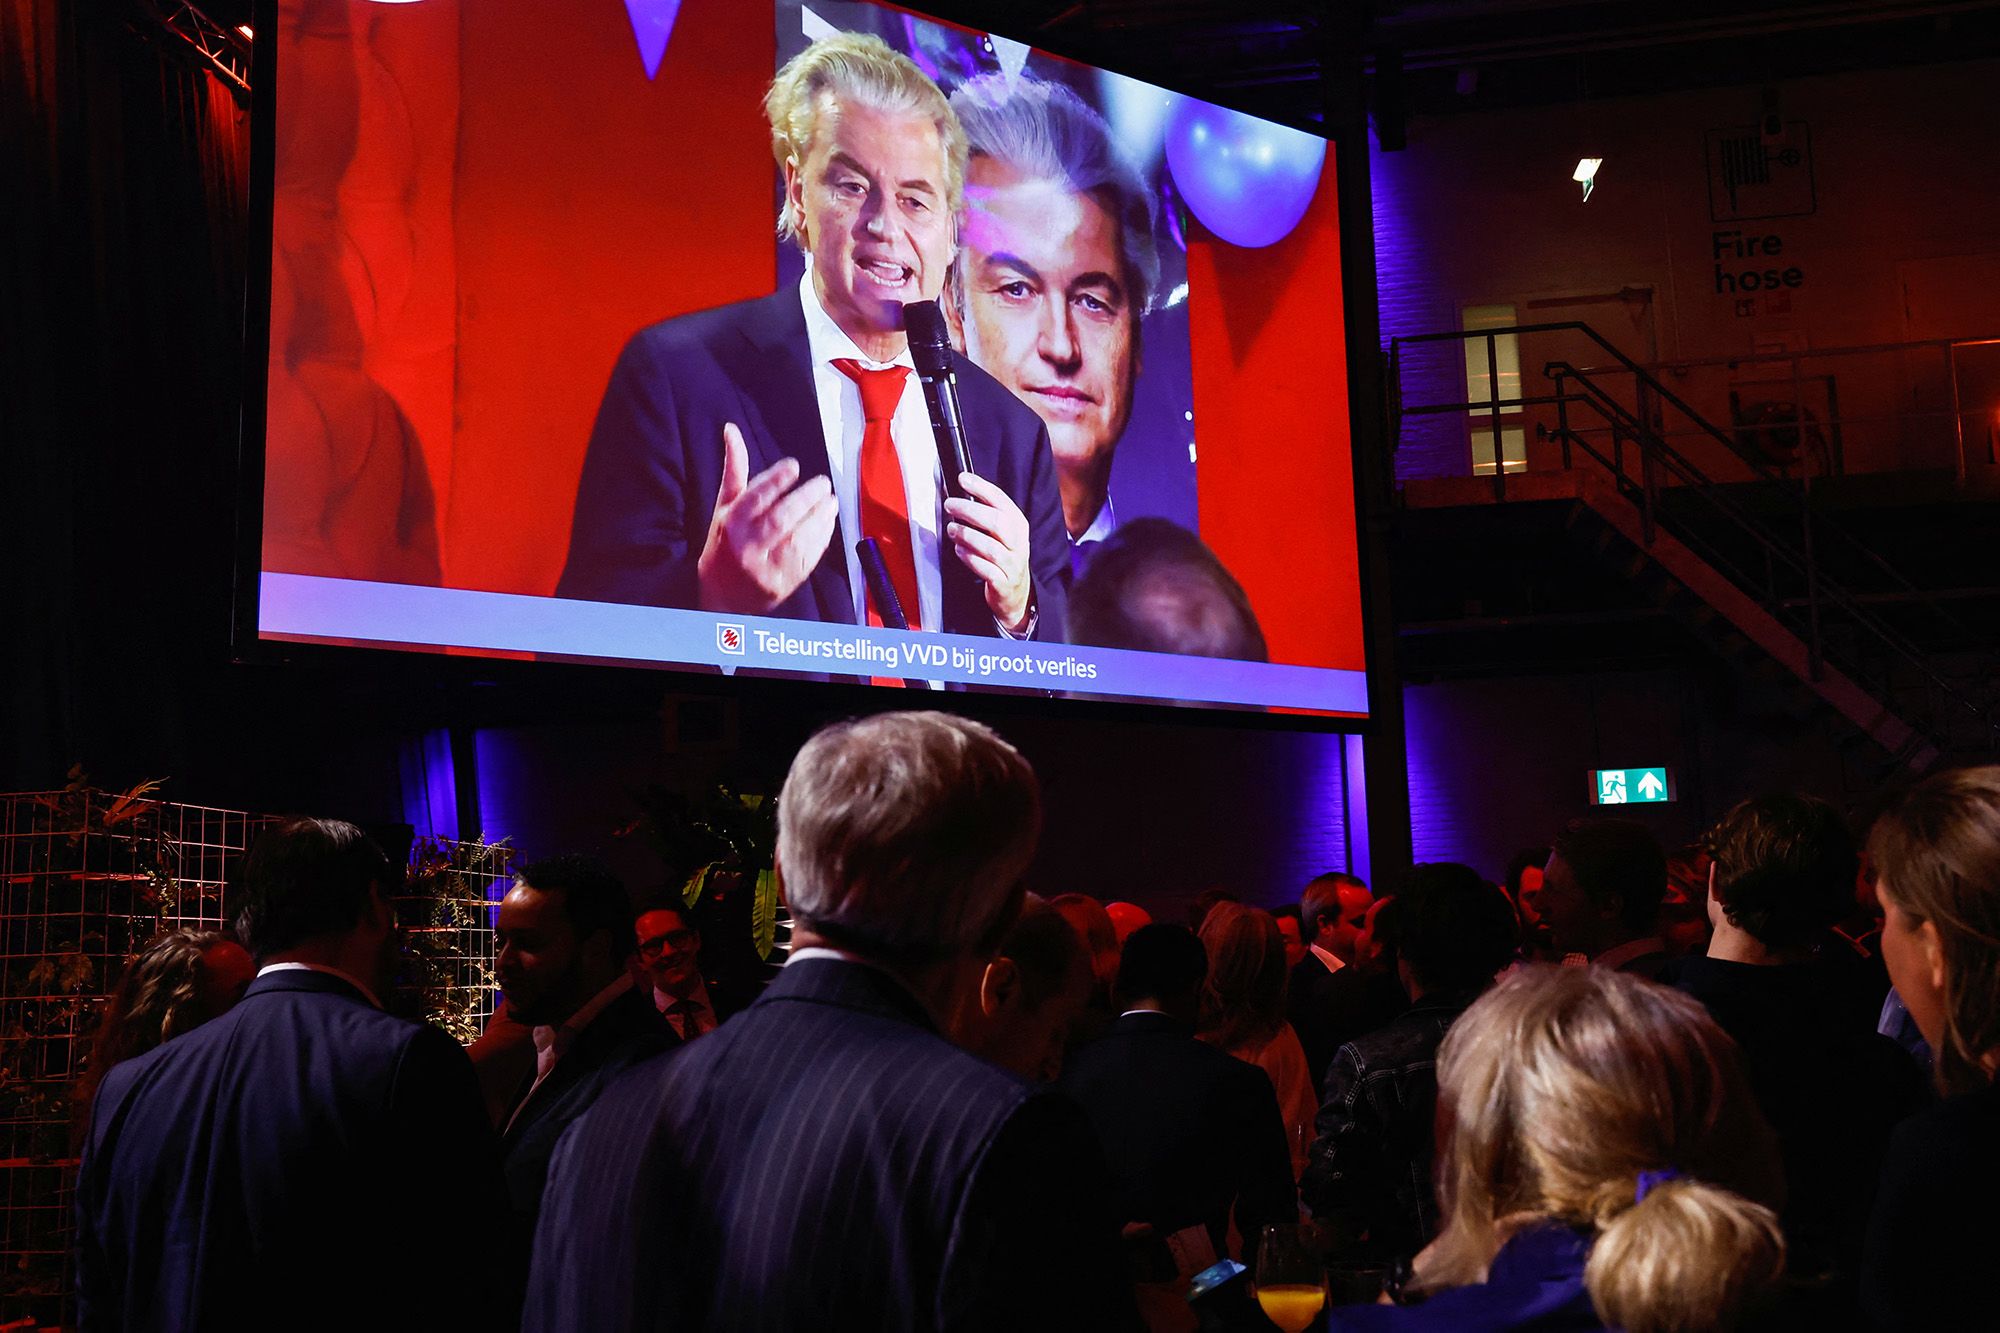 Firebrand Conservative Wins Landslide Victory in the Netherlands Triggering Leftists